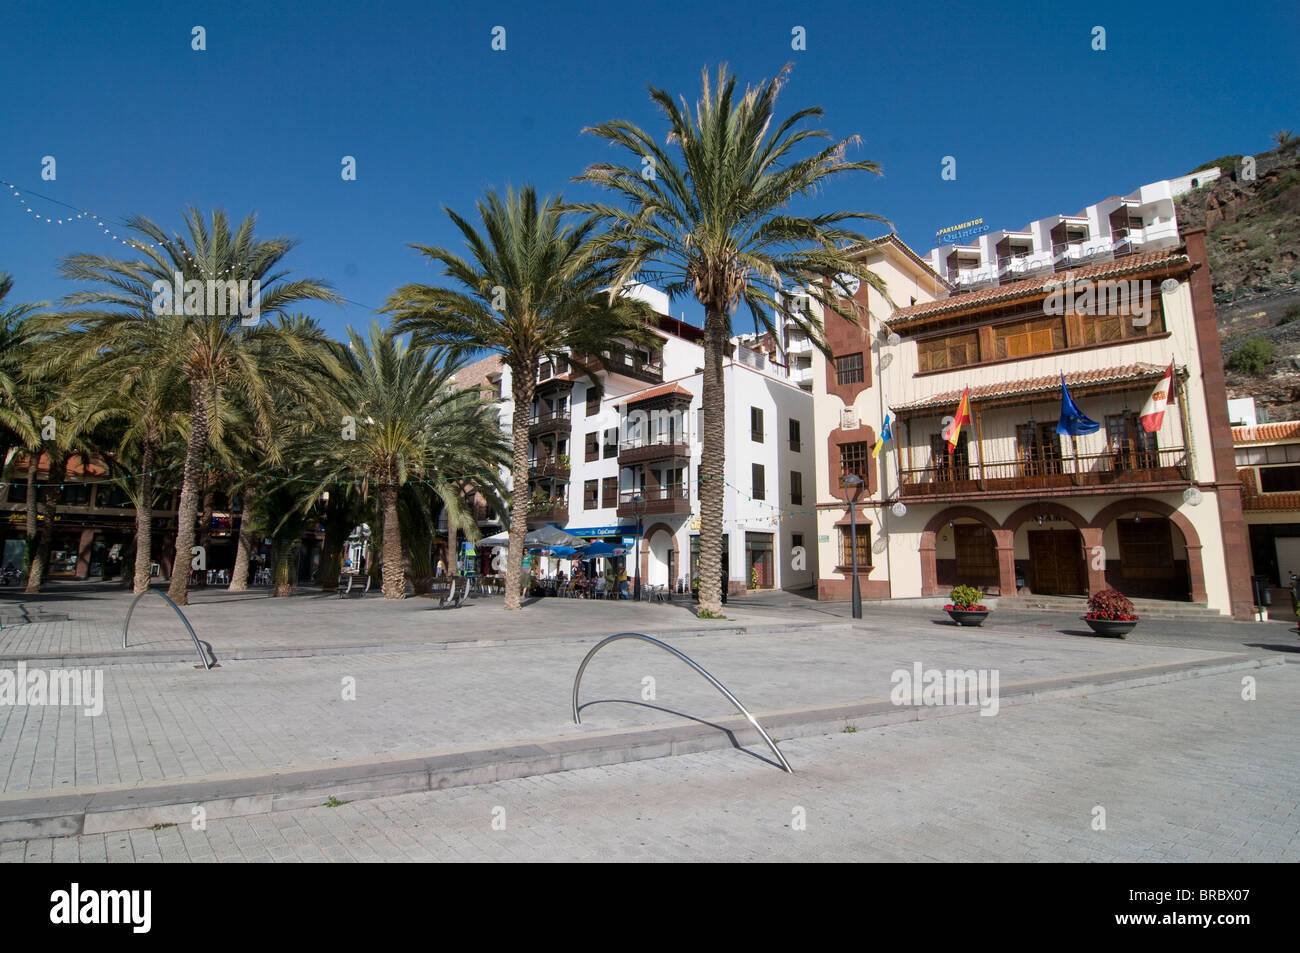 Piazzetta di fronte di edifici coloniali, San Sebastian de la Gomera, La Gomera, isole Canarie, Spagna Foto Stock